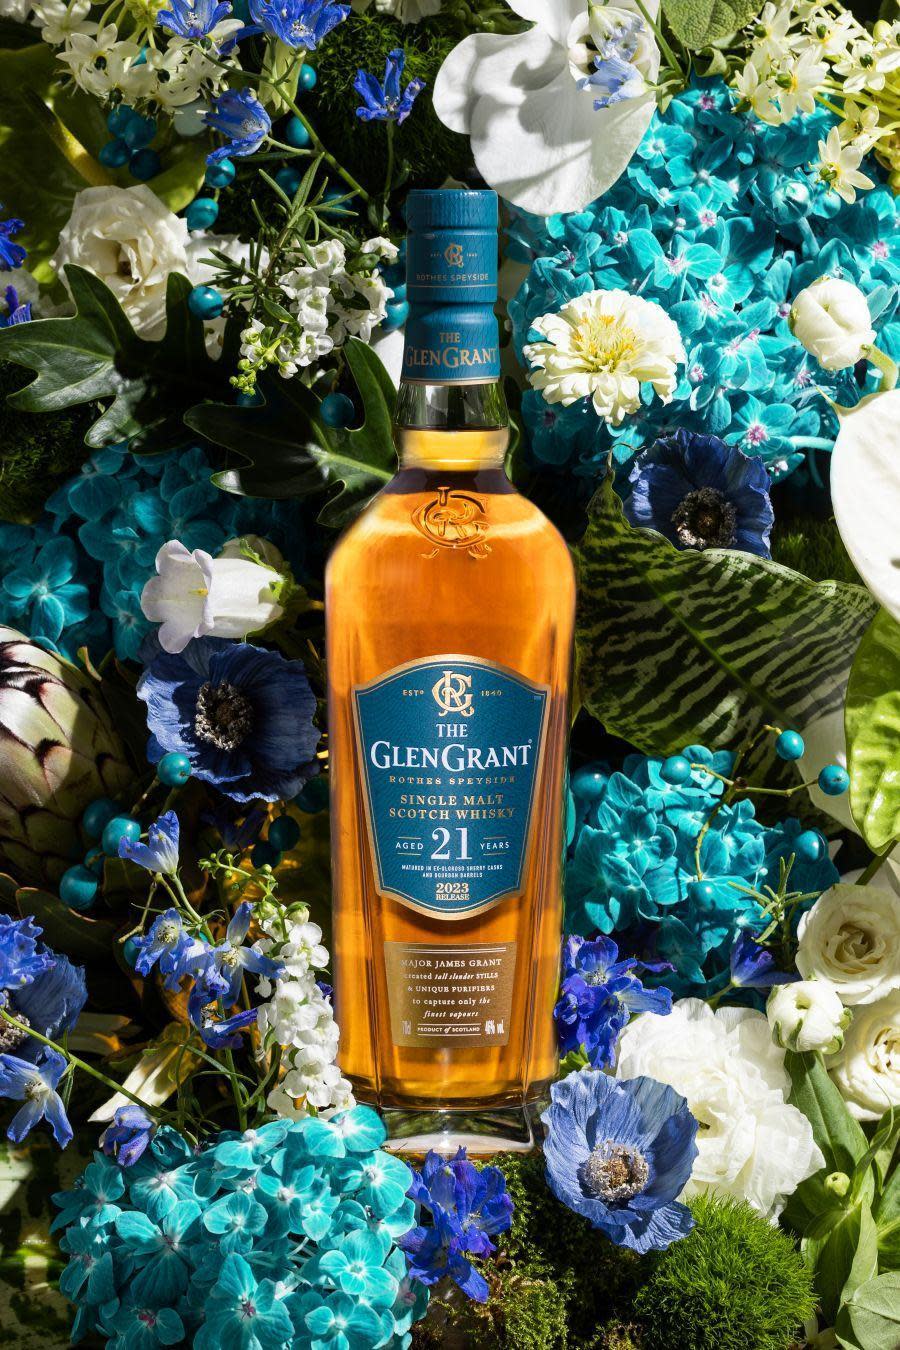 蘇格蘭單一麥芽威士忌品牌格蘭冠（GLEN GRANT）發表最新21年酒款，以60%波本桶與40%初次Oloroso雪莉桶老酒勾兌，散發怡人花果香、蜂蜜氣味，讓人有如置身花園。建議售價約NT$6,600。